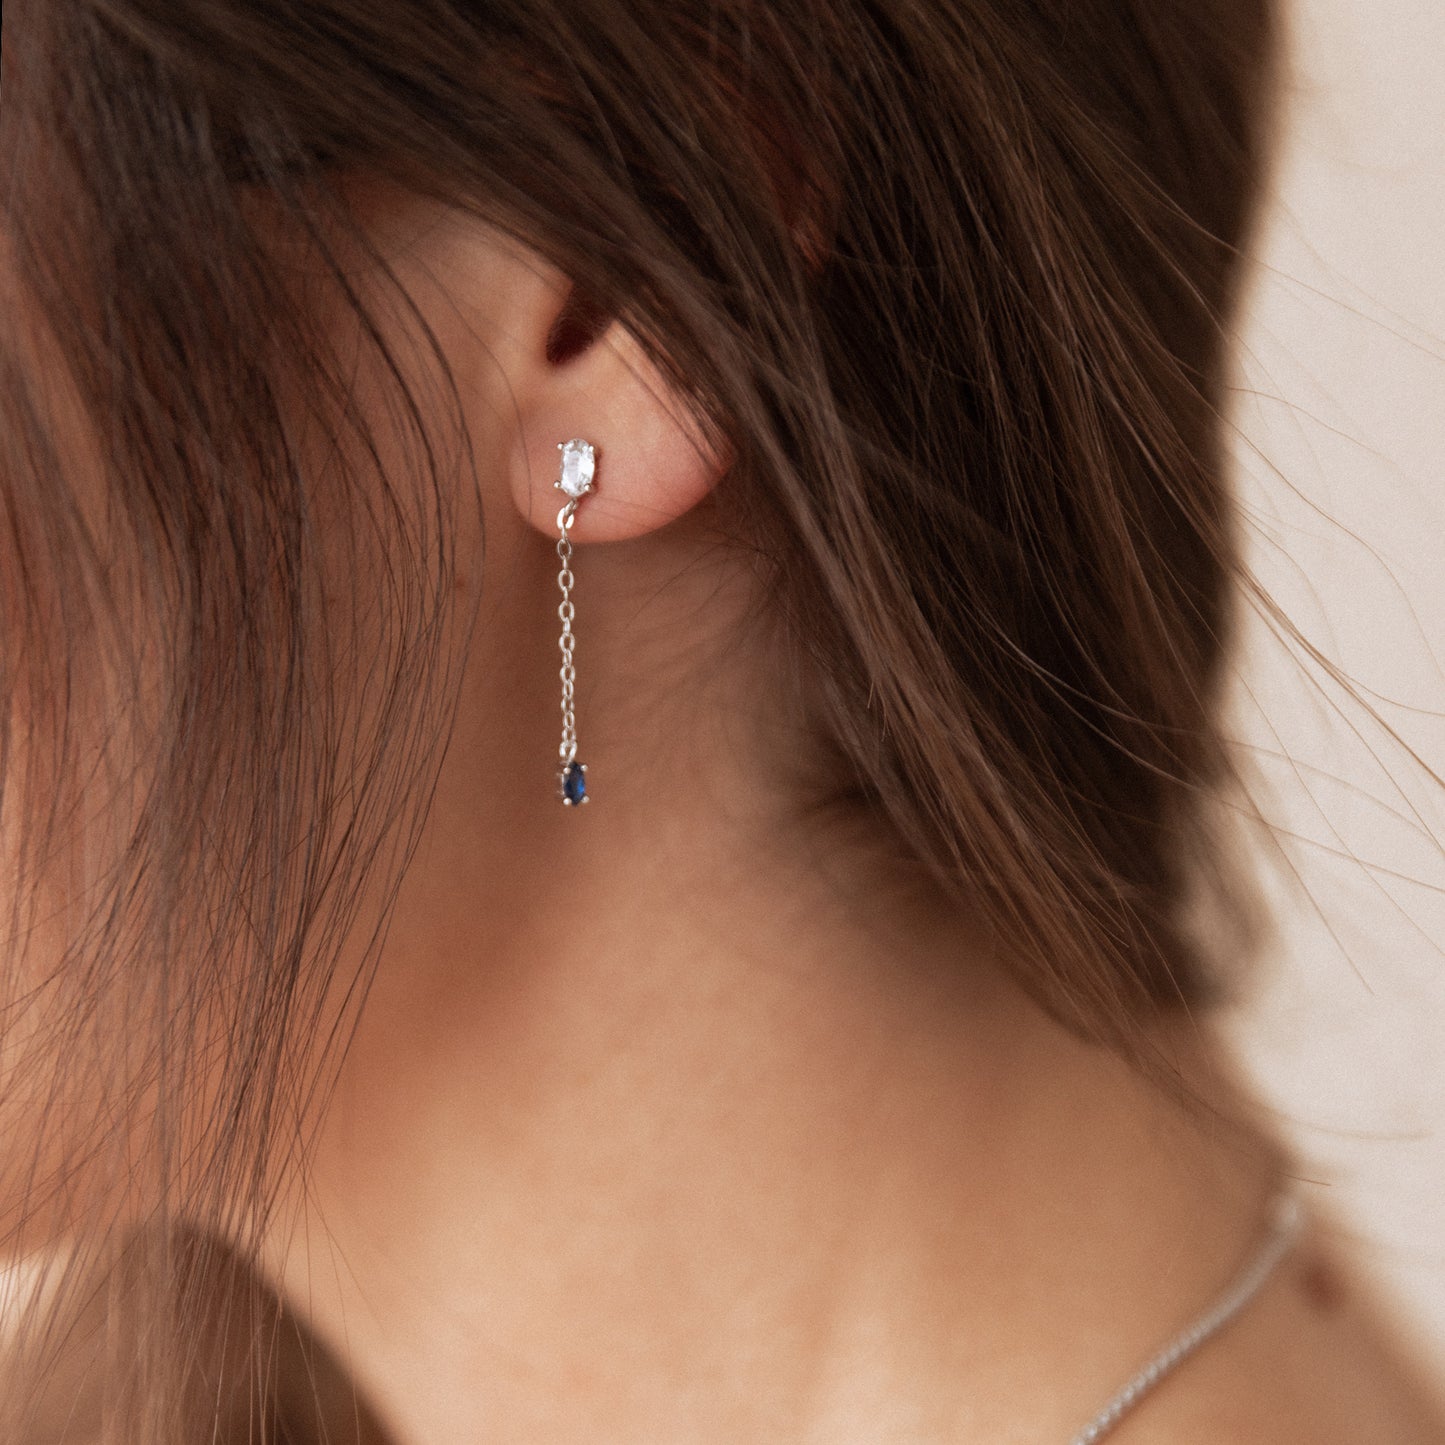 Callie earrings